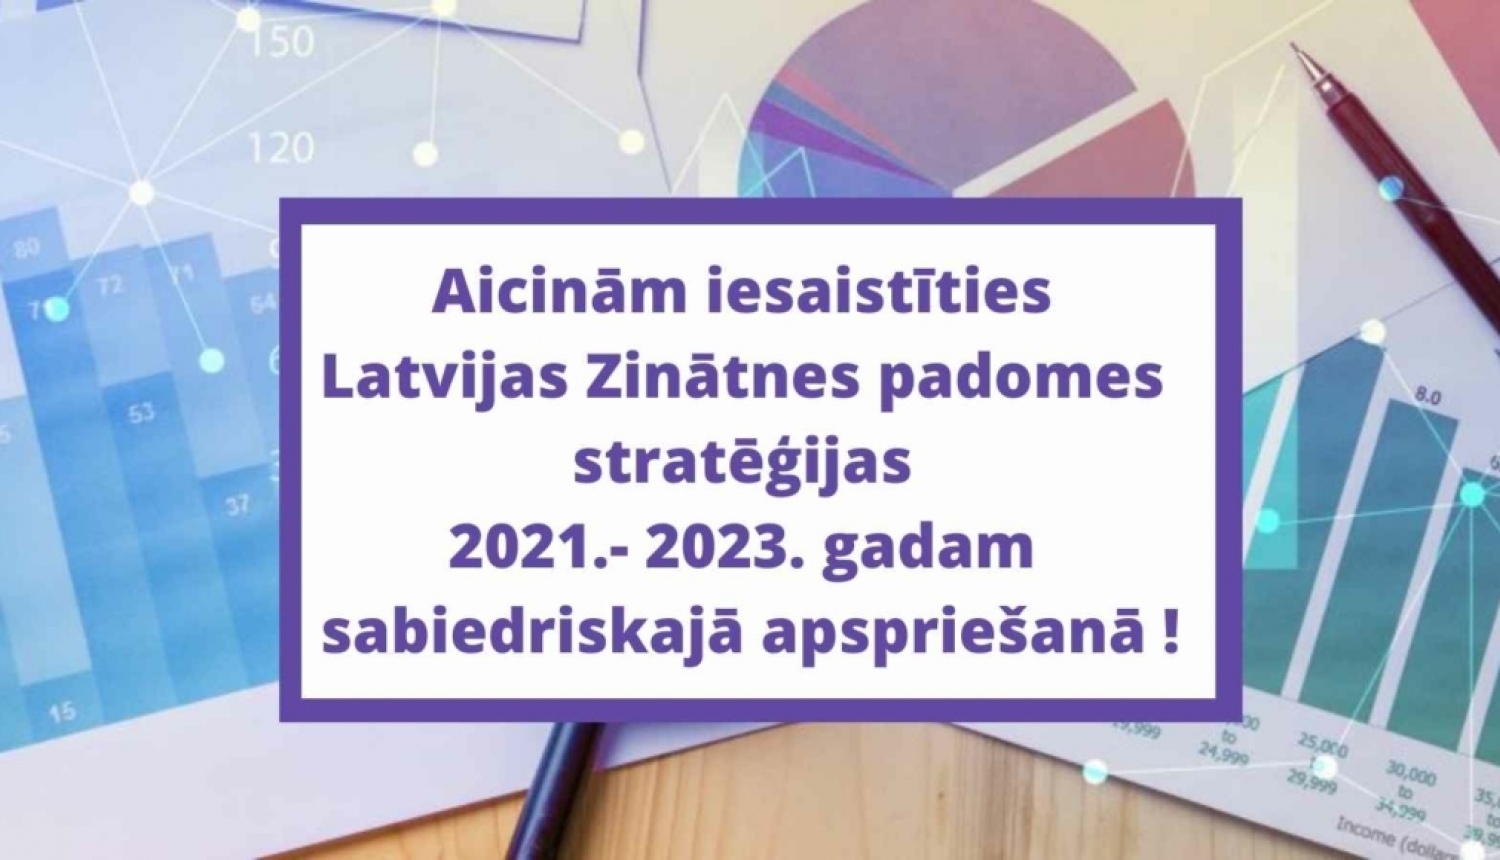 Aicina iesaistīties Latvijas Zinātnes padomes stratēģijas 2021.- 2023. gadam sabiedriskajā apspriešanā